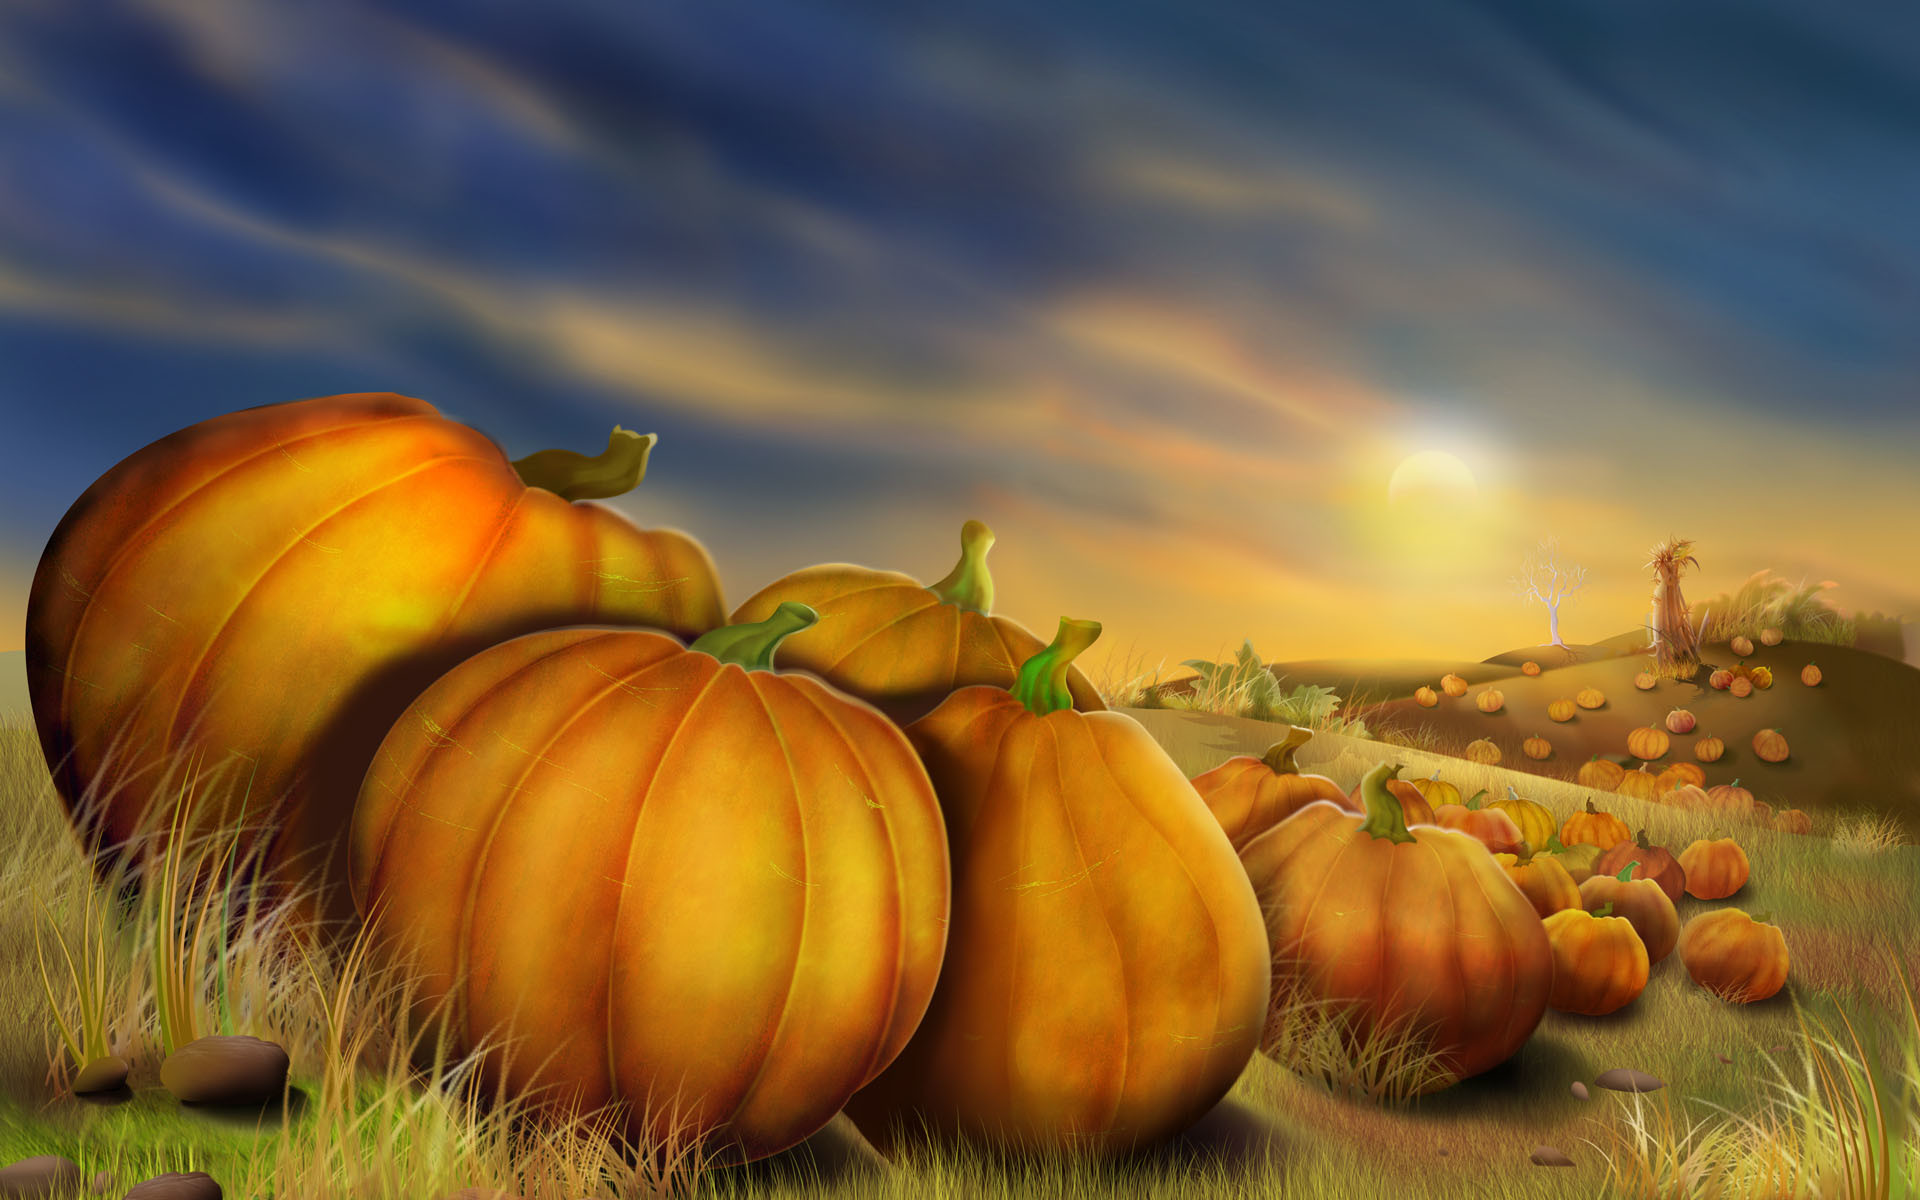 thanksgiving 3d wallpaper,calabaza,pumpkin,natural foods,winter squash,natural landscape